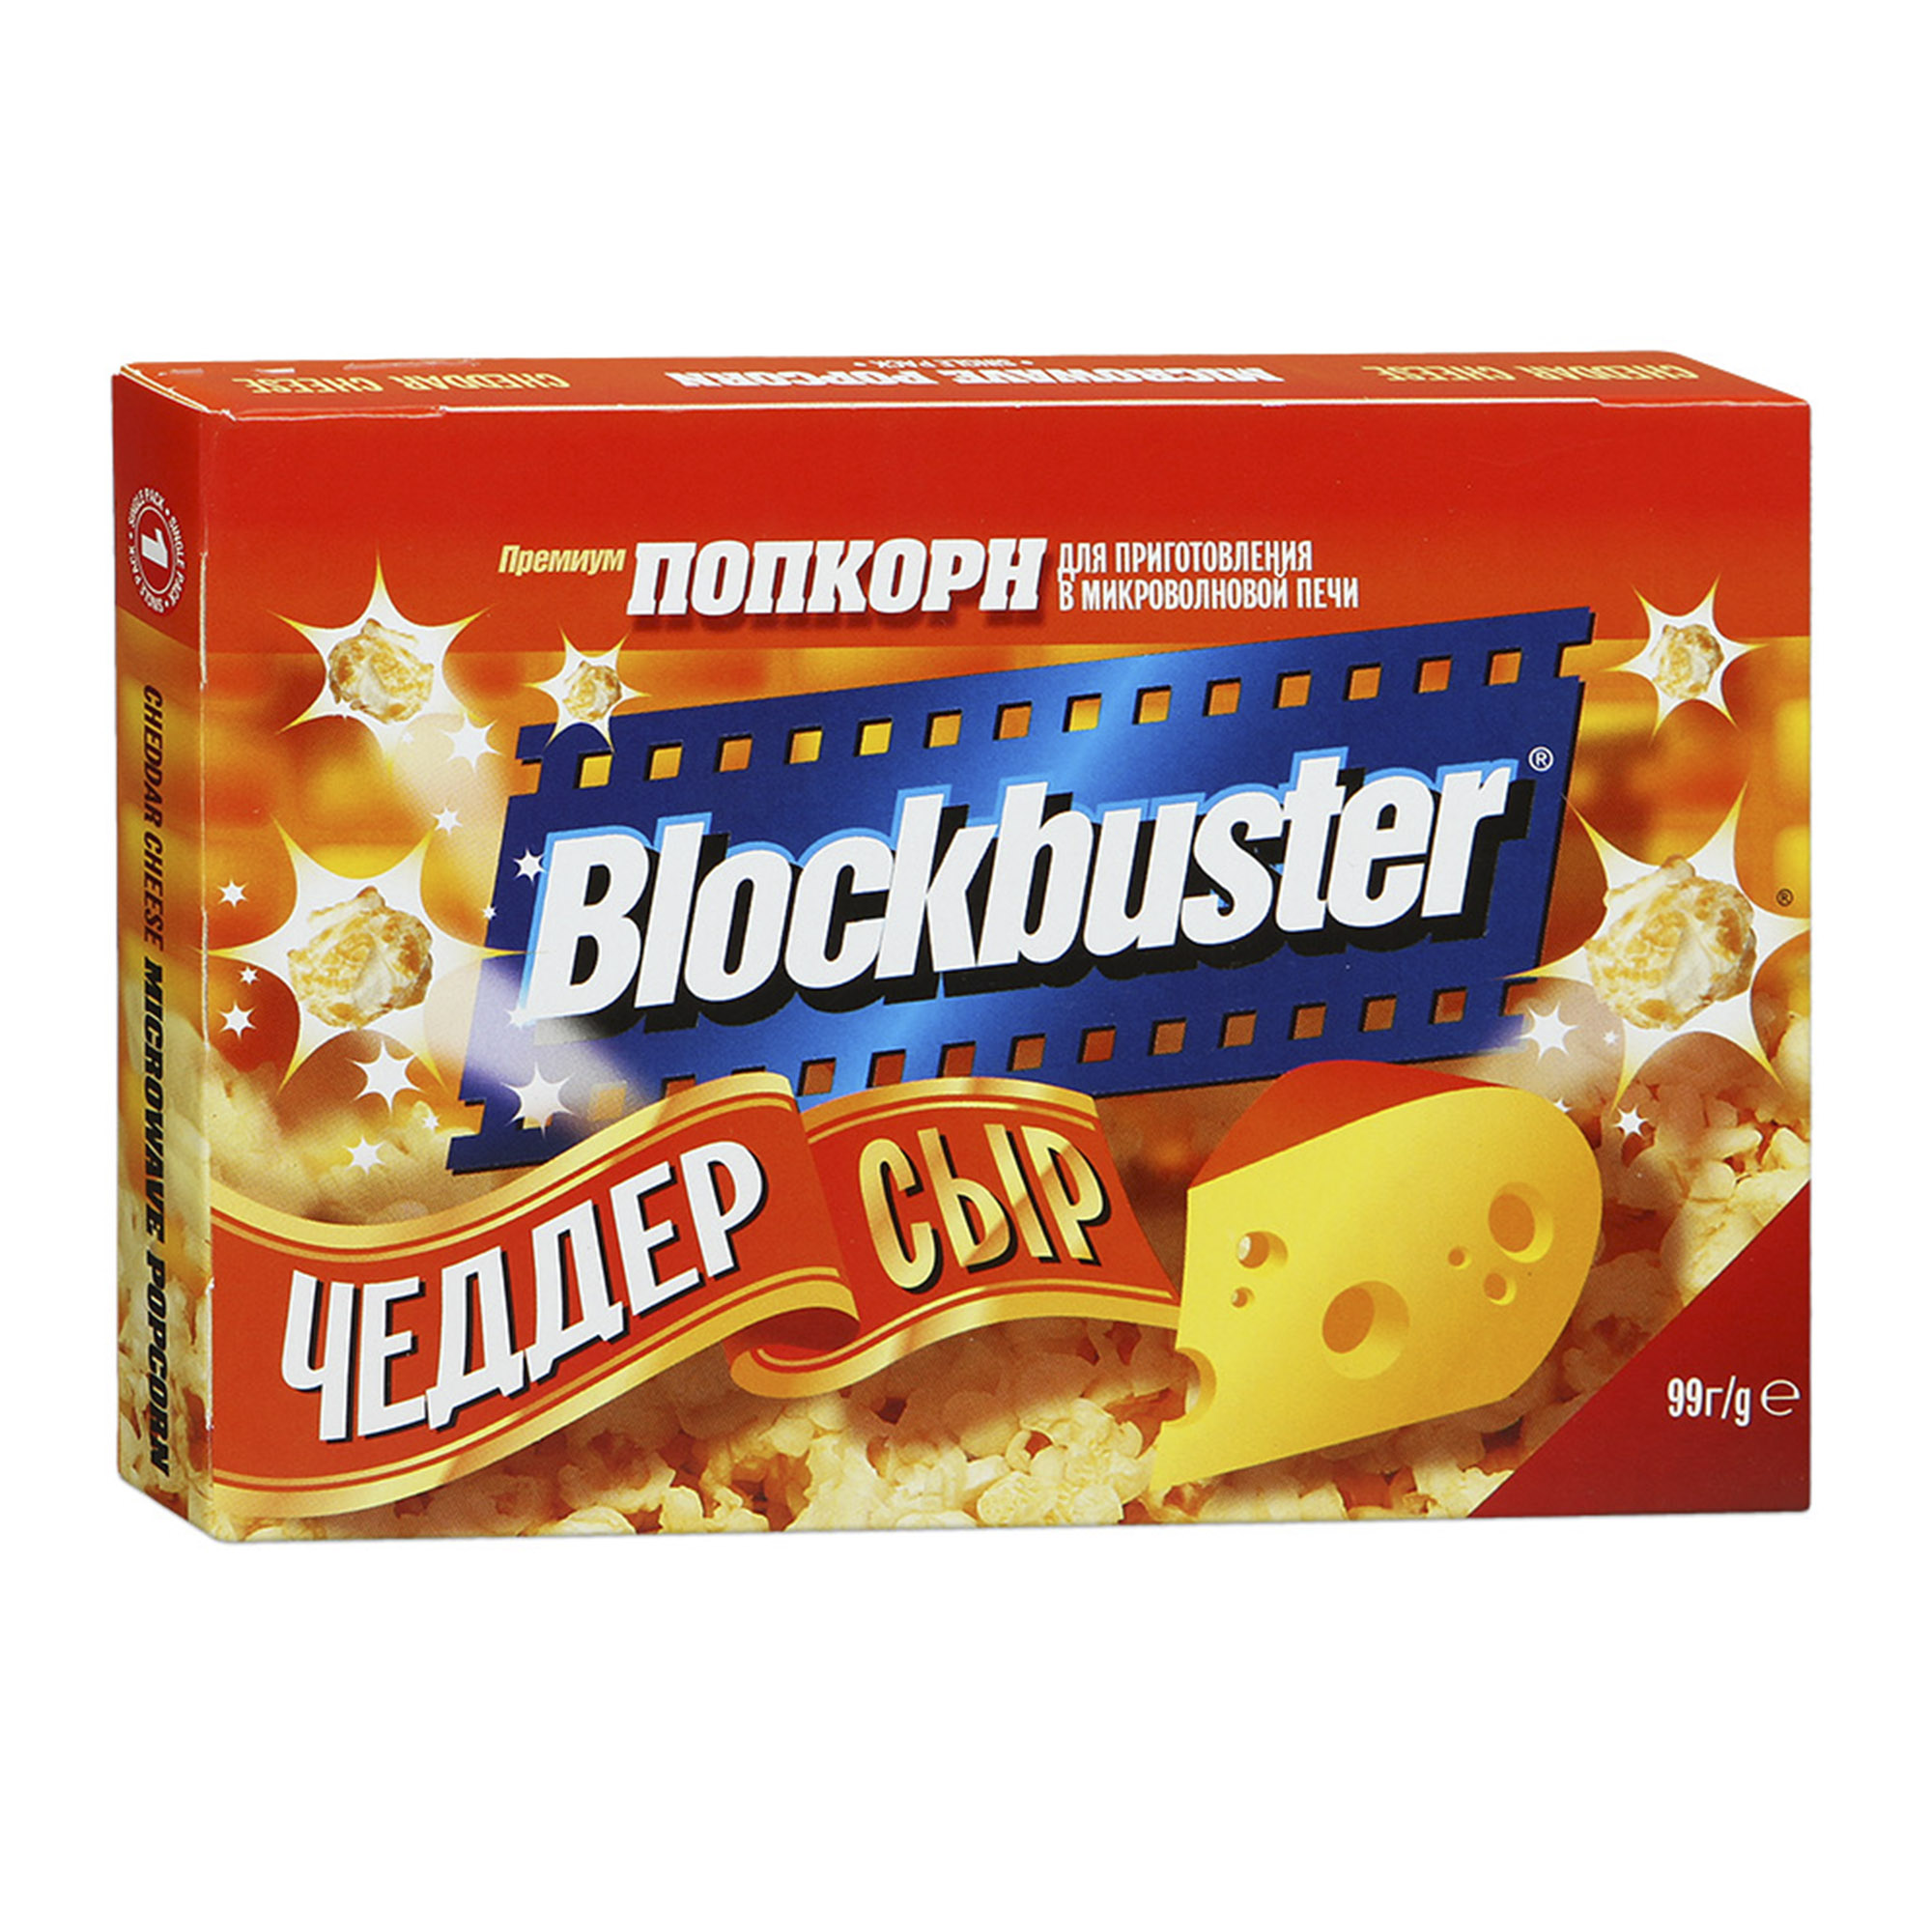 Попкорн Blockbuster с сыром Чеддер 90 г попкорн blockbuster карамелизованная со вкусом шоколада 100 г